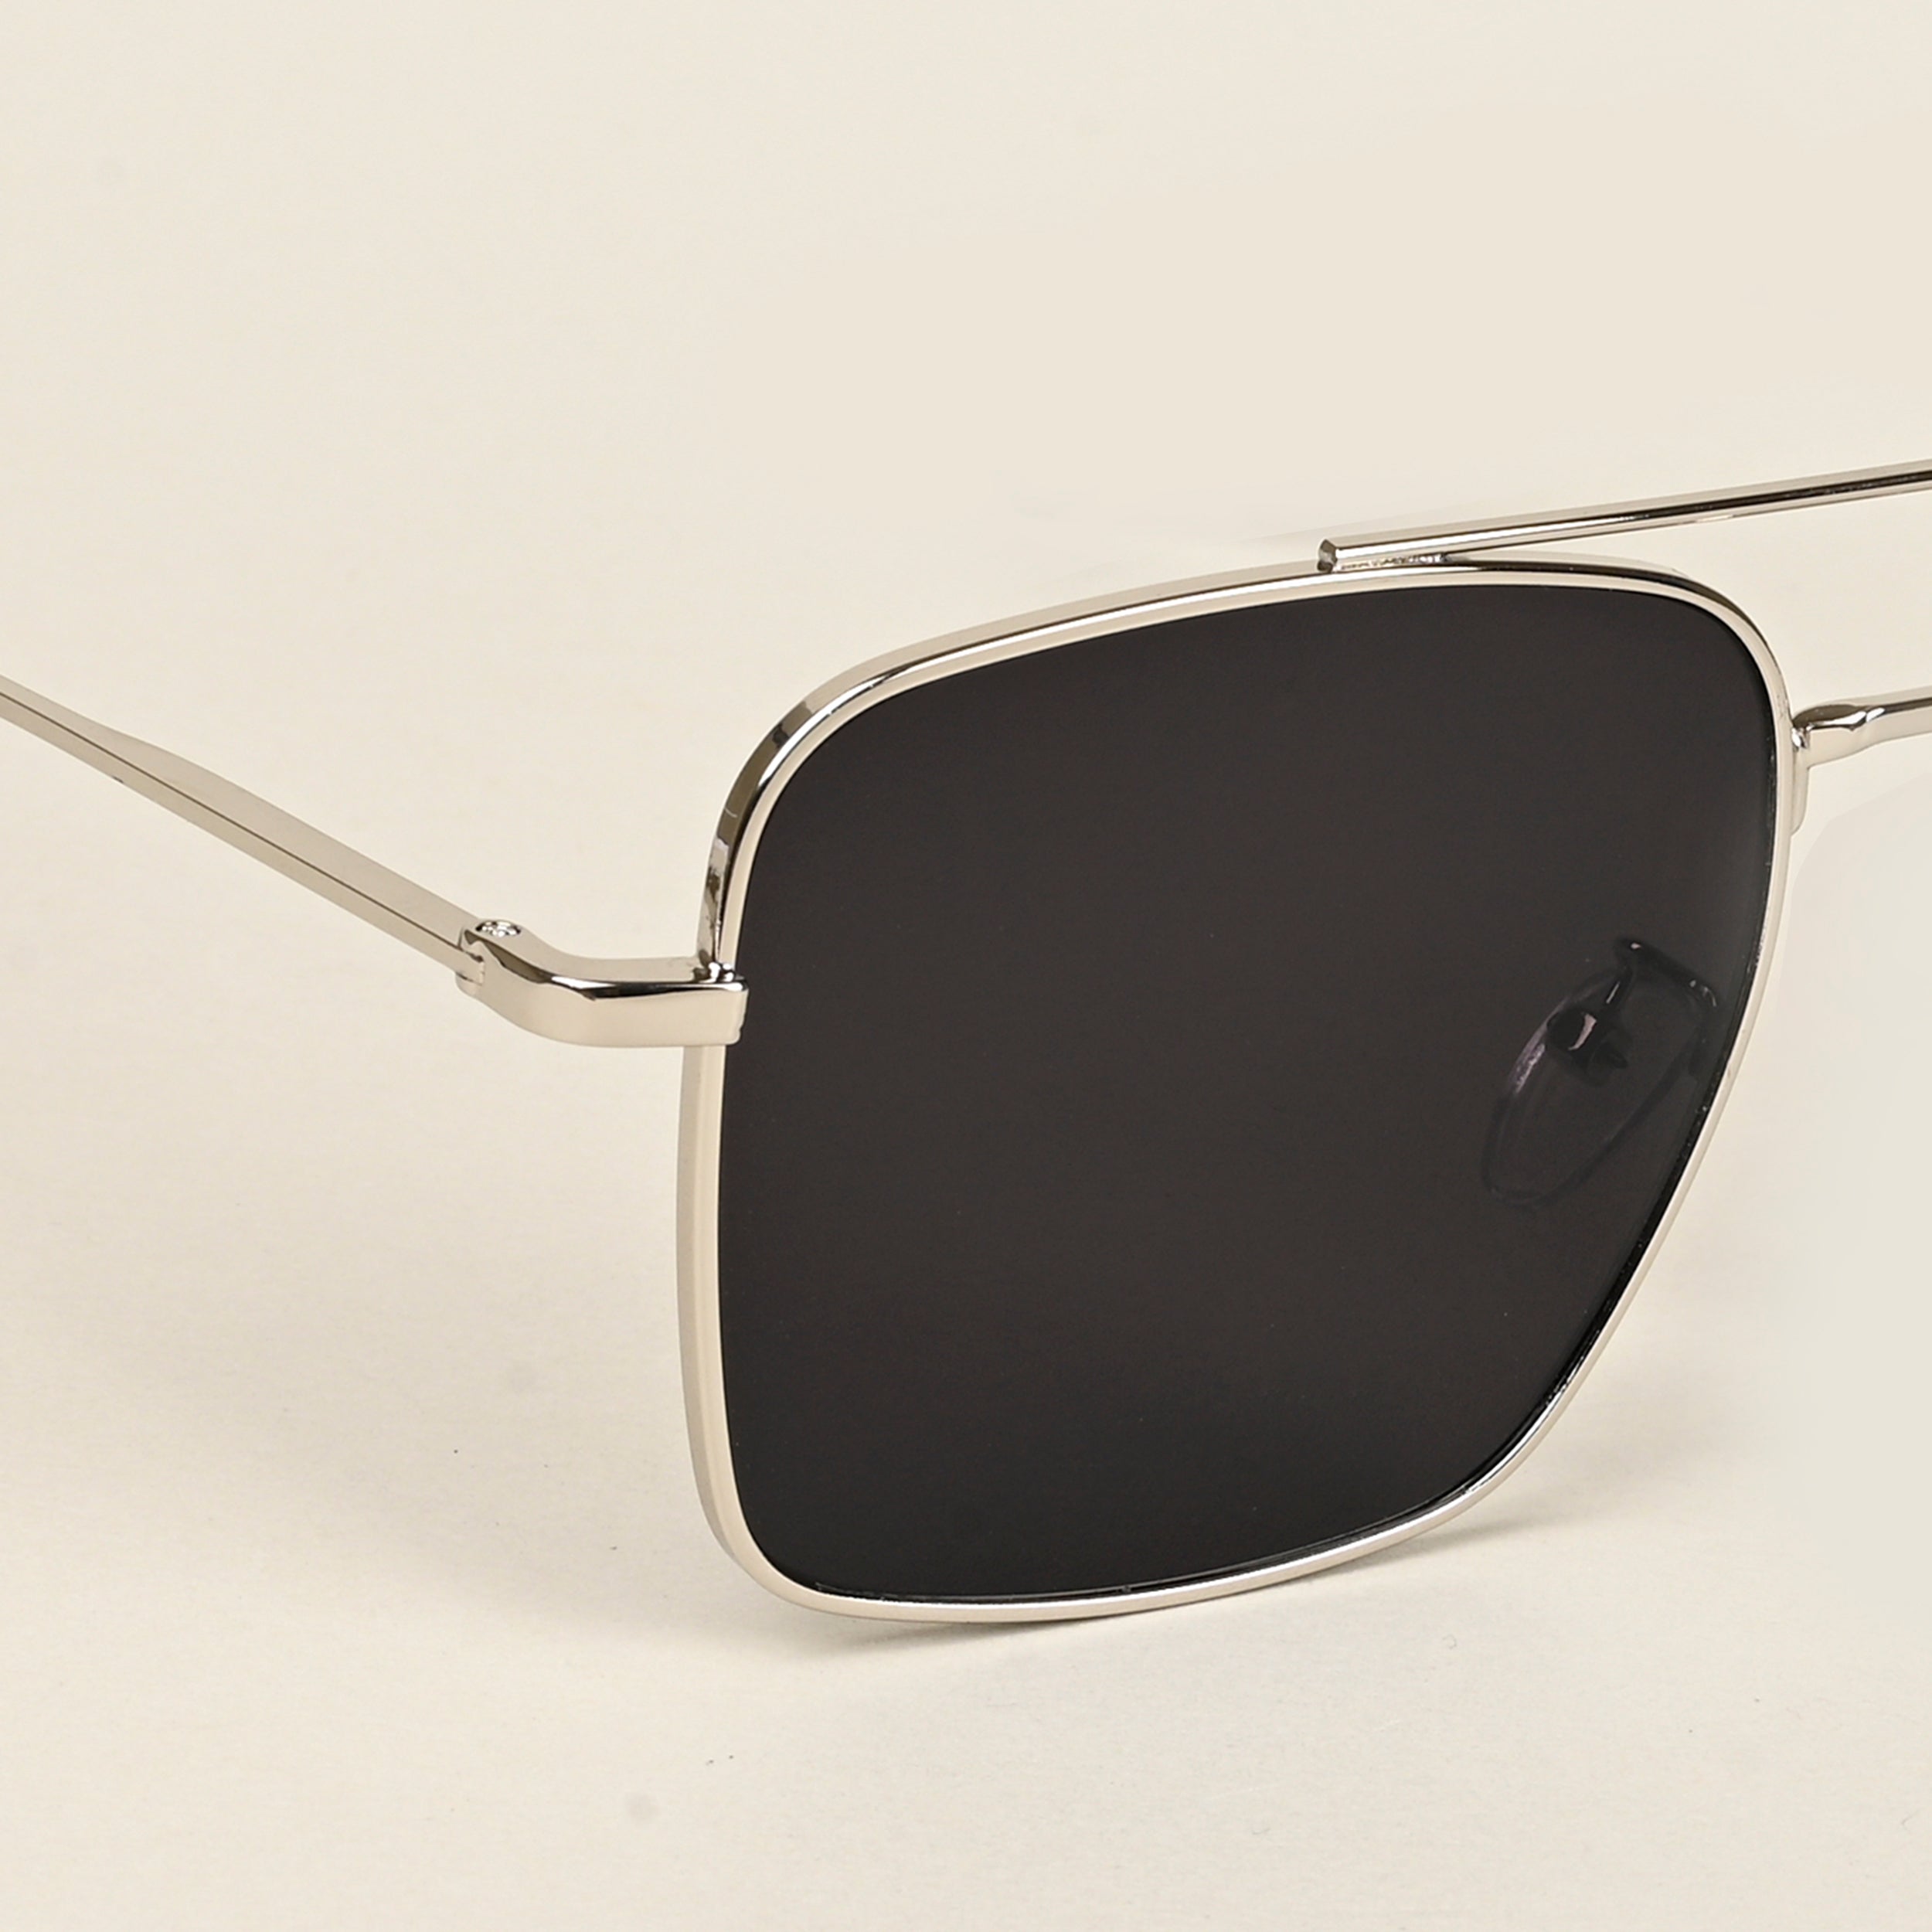 Voyage Aviator Sunglasses for Men & Women (Black Lens | Silver Frame - MG5179)